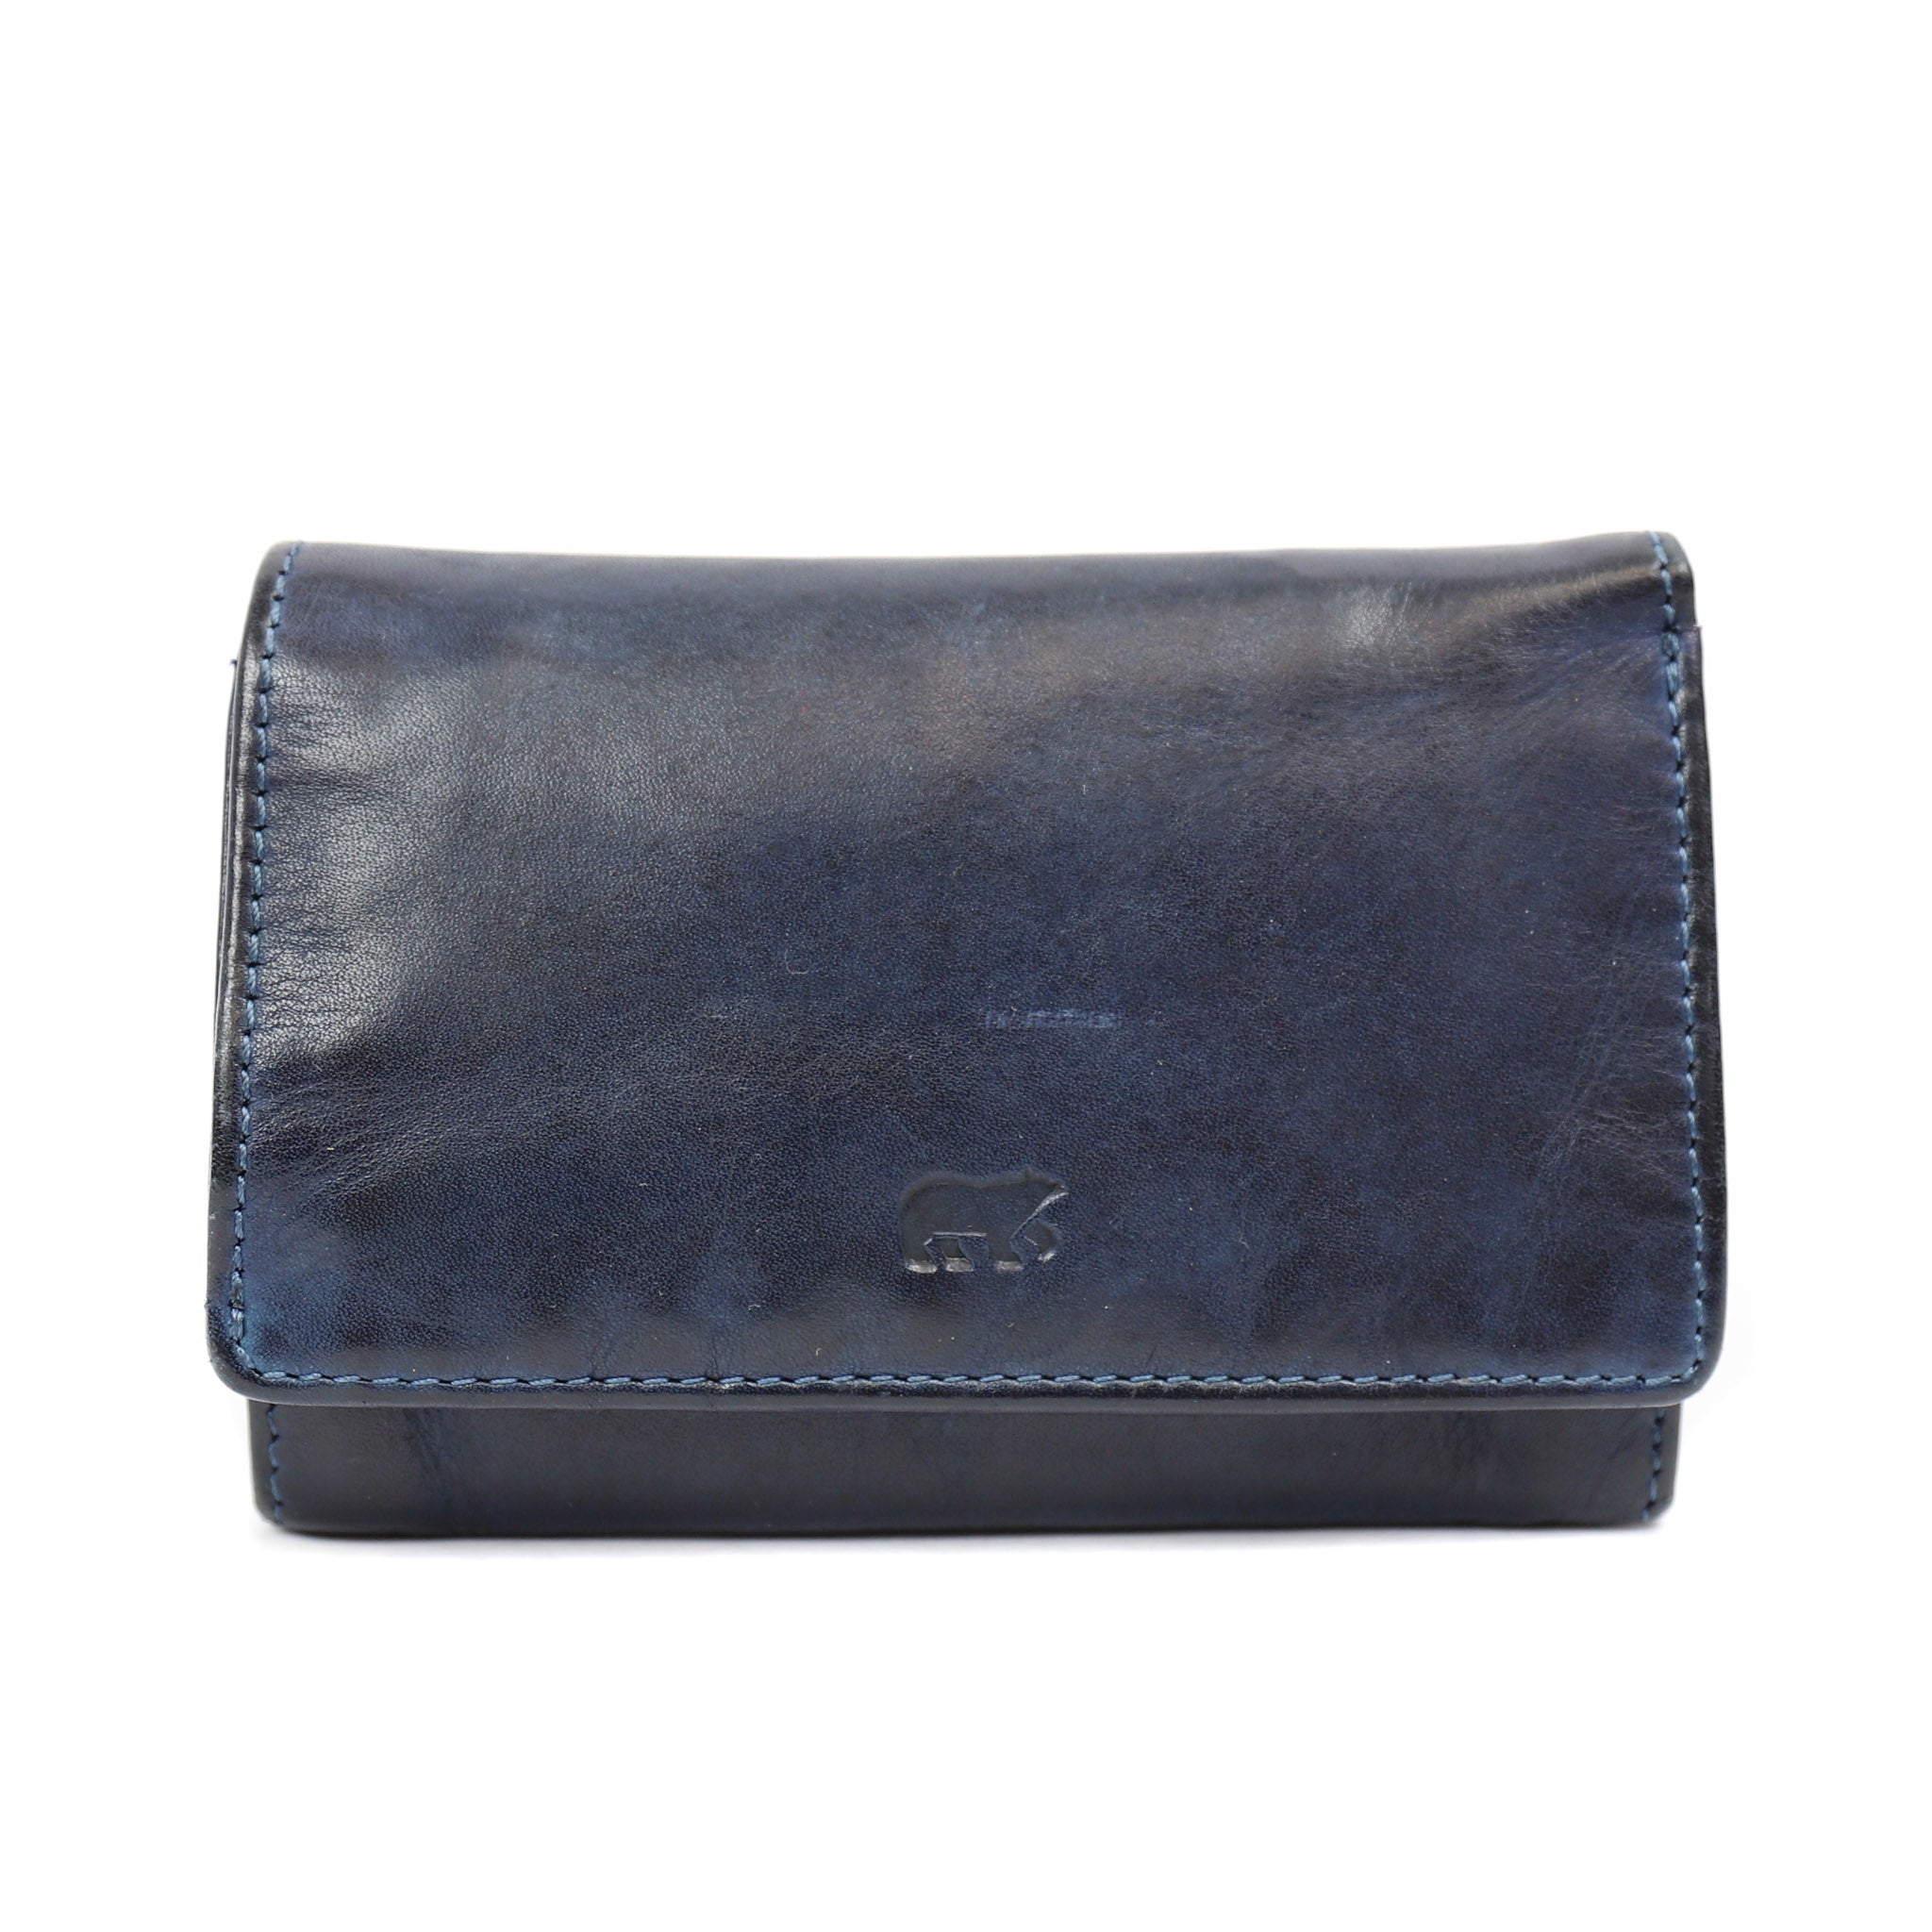 Wrap wallet 'Flappie' dark blue - CL 15572